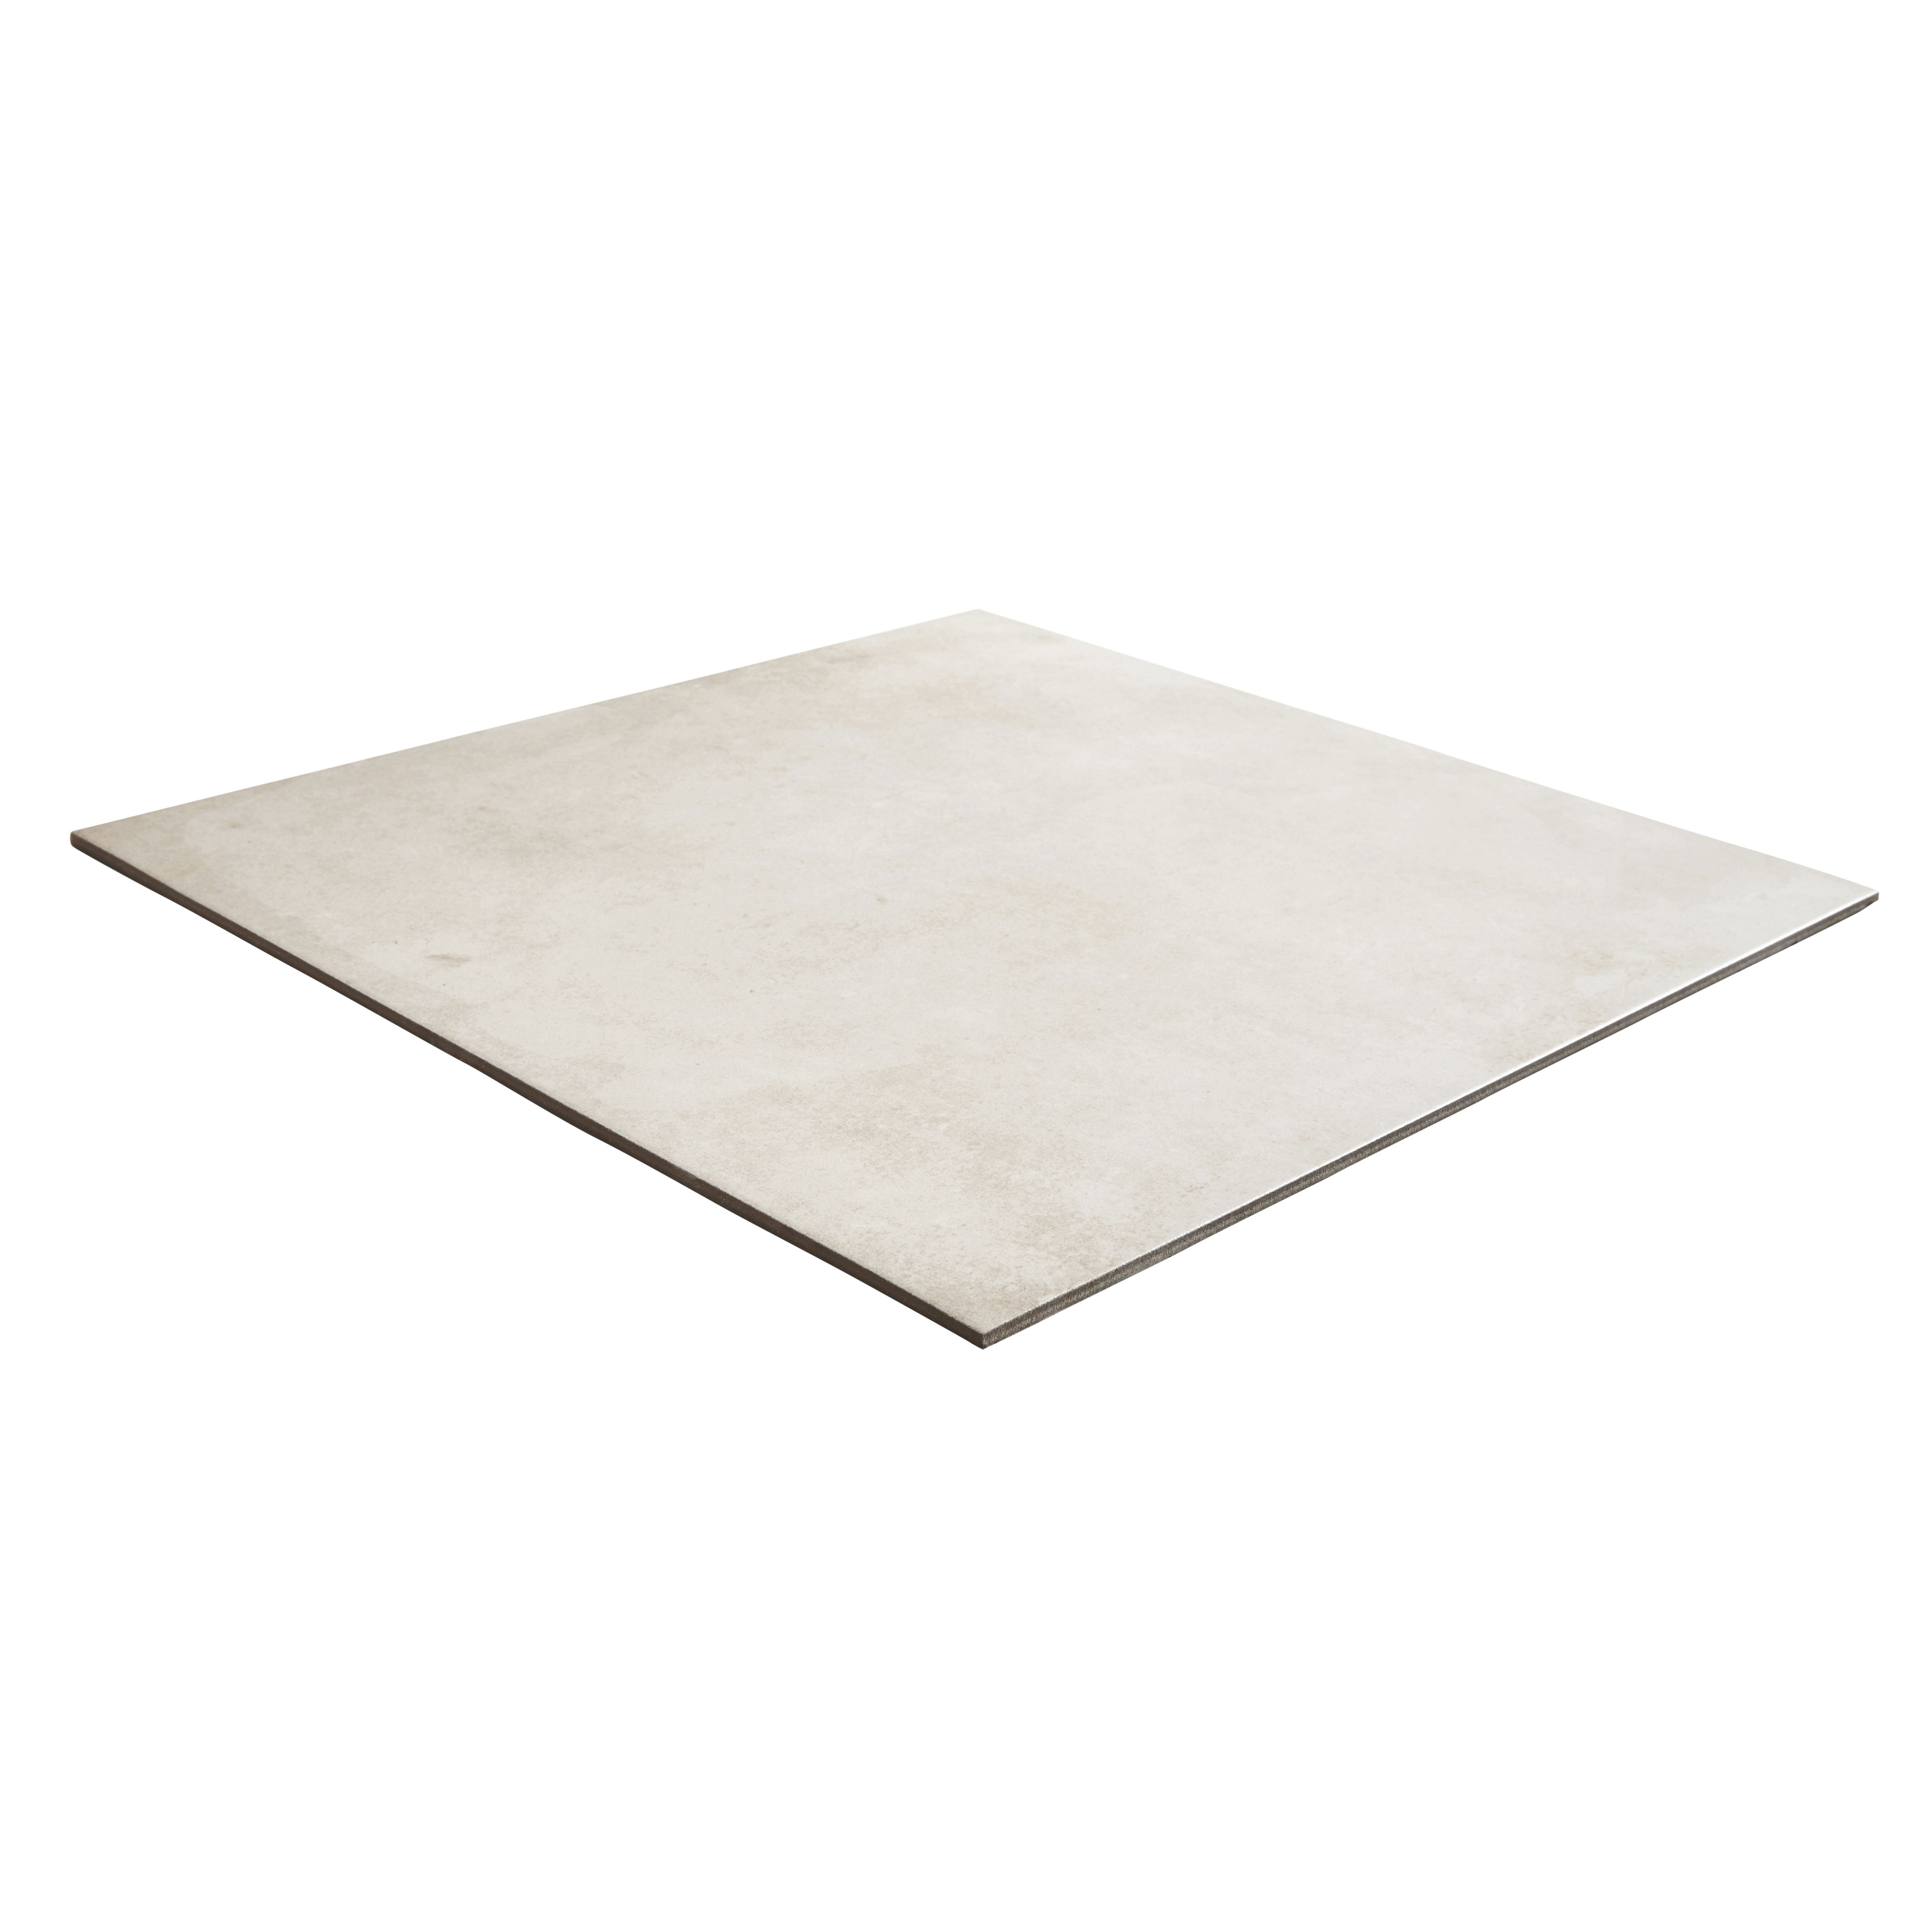 Colours Konkrete Ivory Matt Concrete effect Porcelain Indoor Wall & floor tile, (L)616mm (W)616mm, 1.52m²